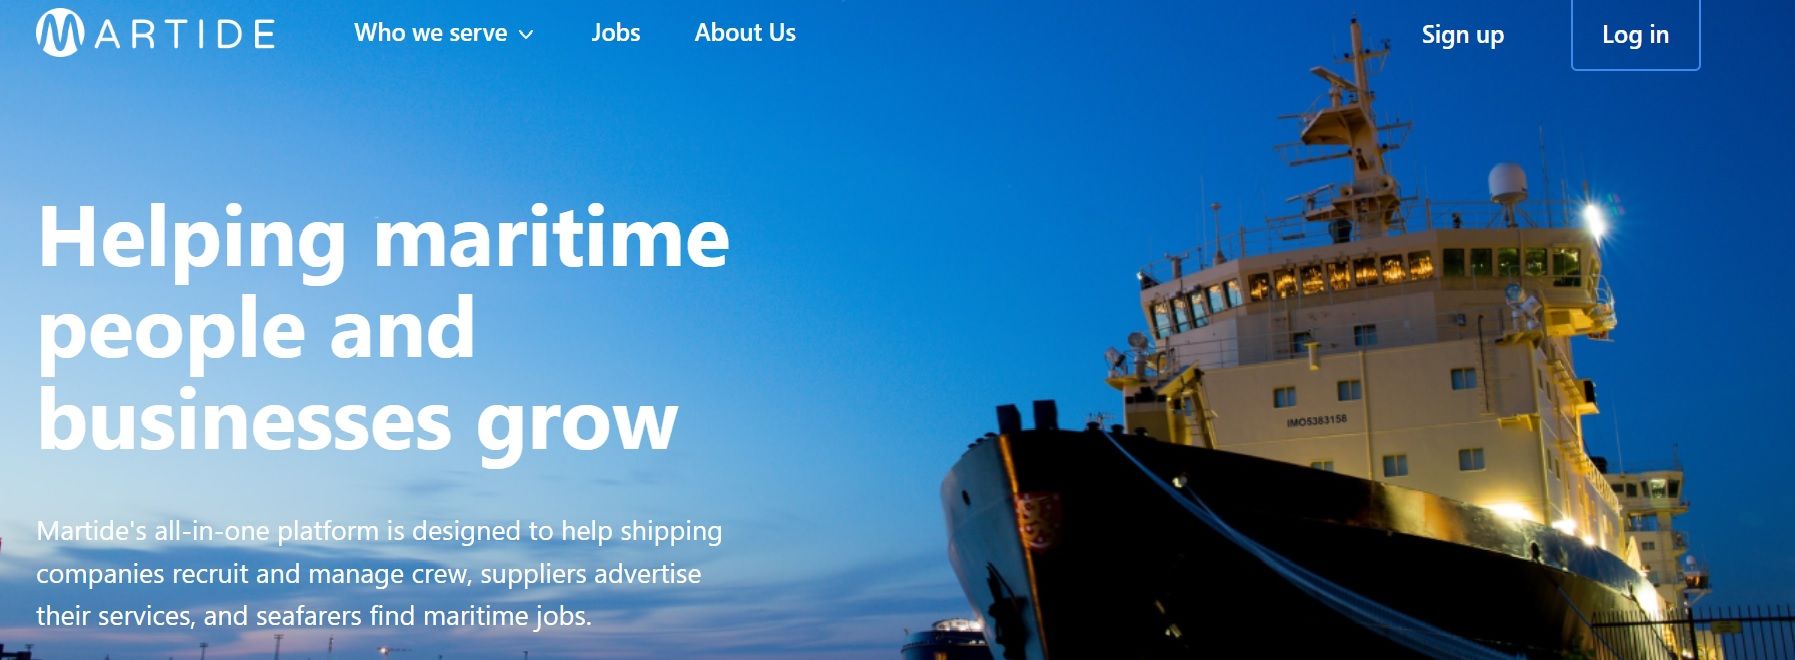 Martide seafarer jobs and maritime recruitment advert